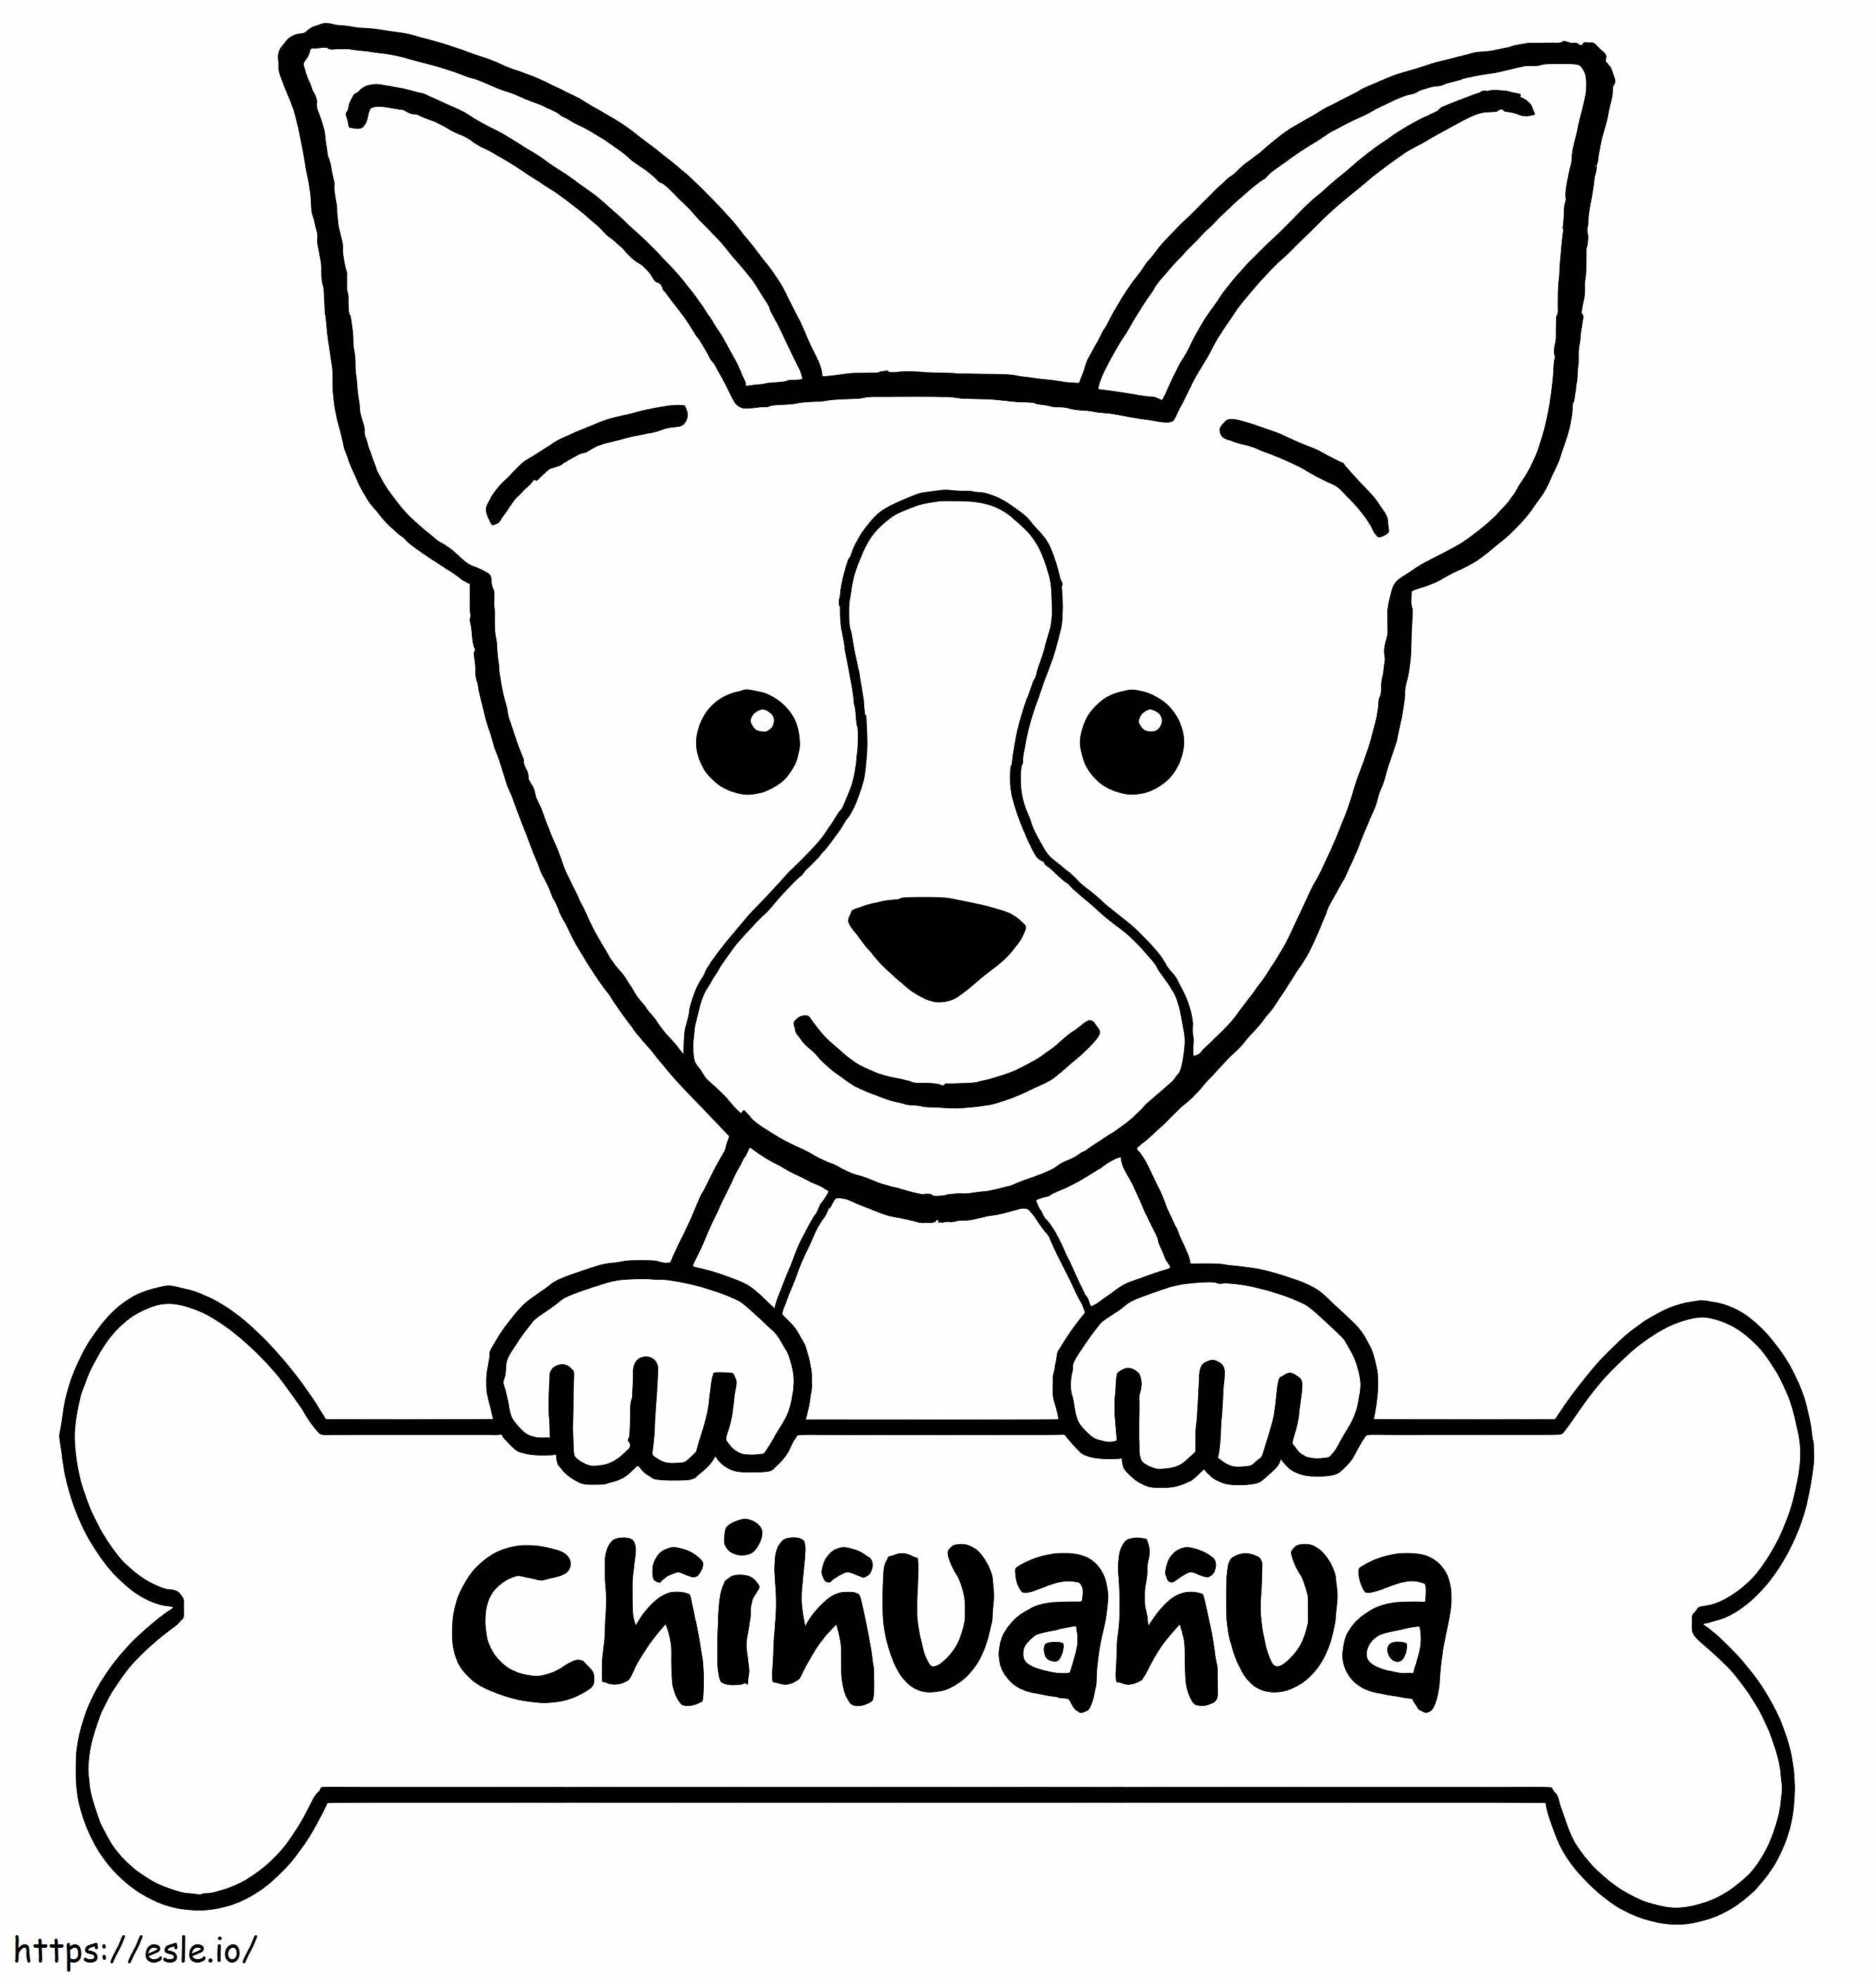 Chihuahua I Kość kolorowanka